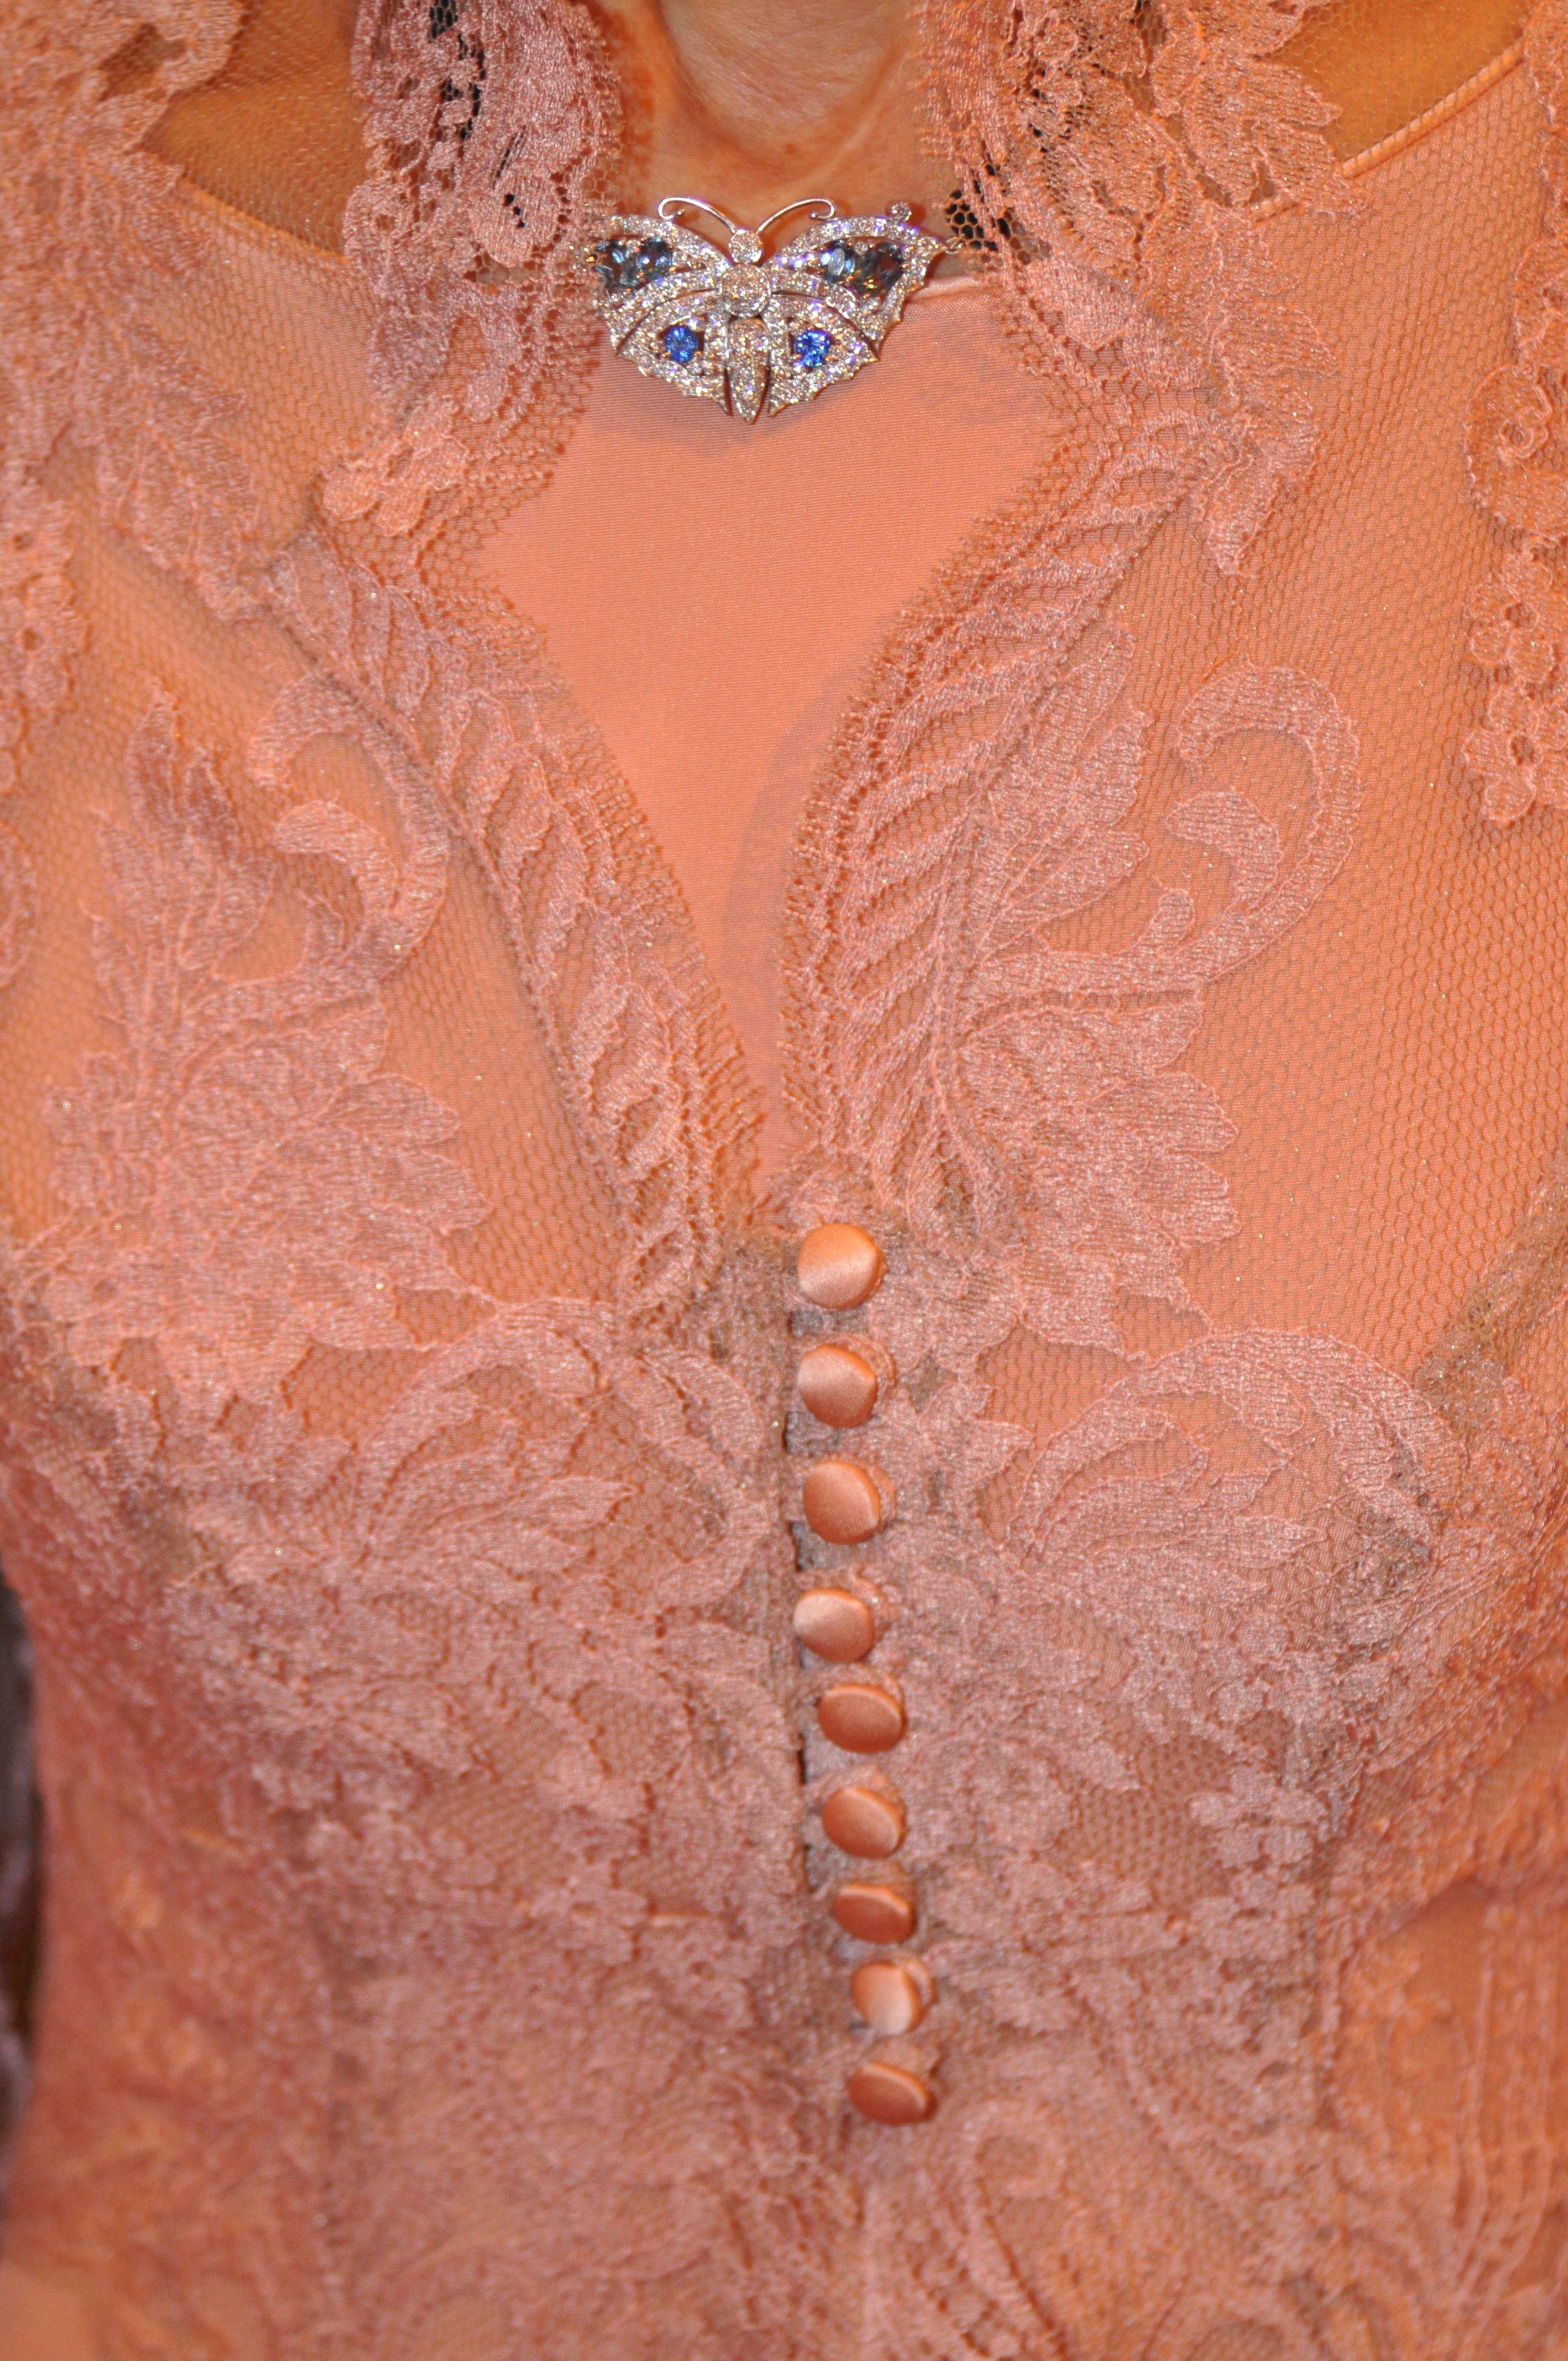 Lace dress